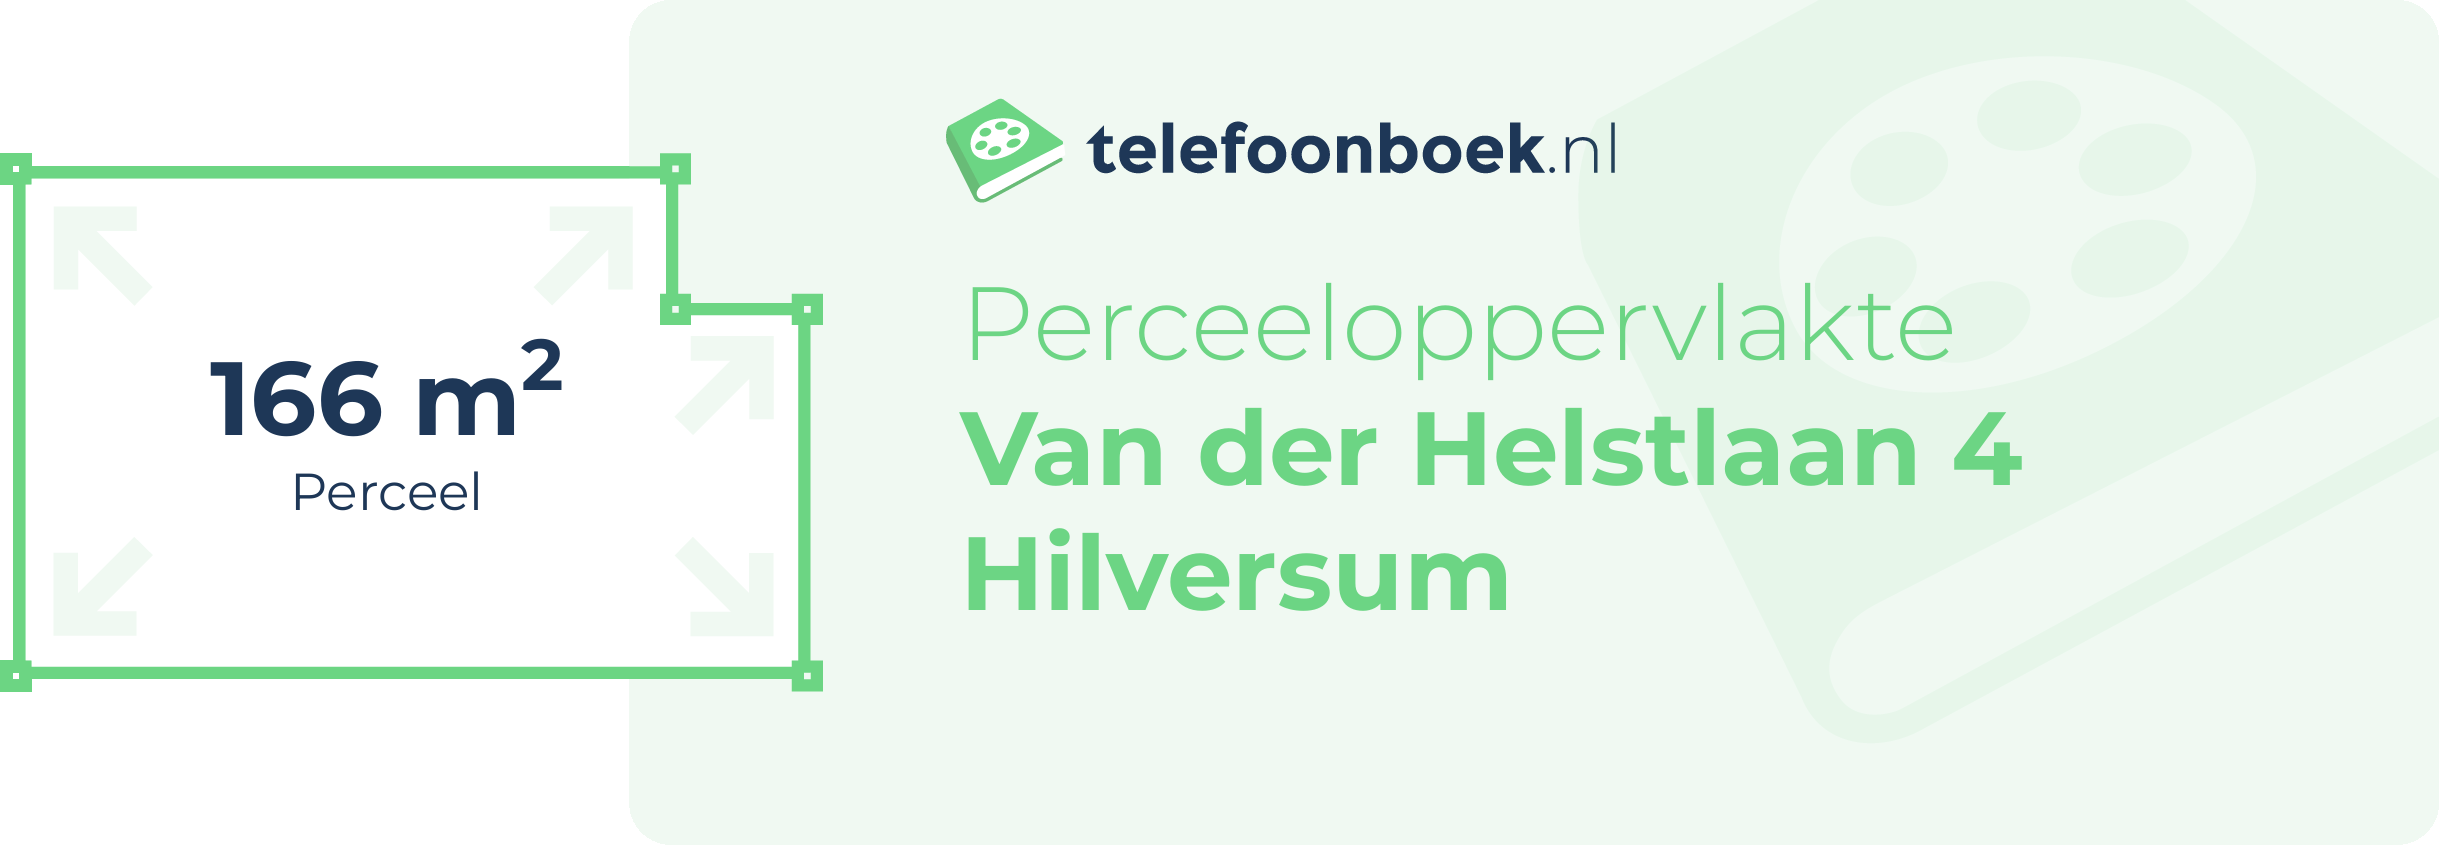 Perceeloppervlakte Van Der Helstlaan 4 Hilversum